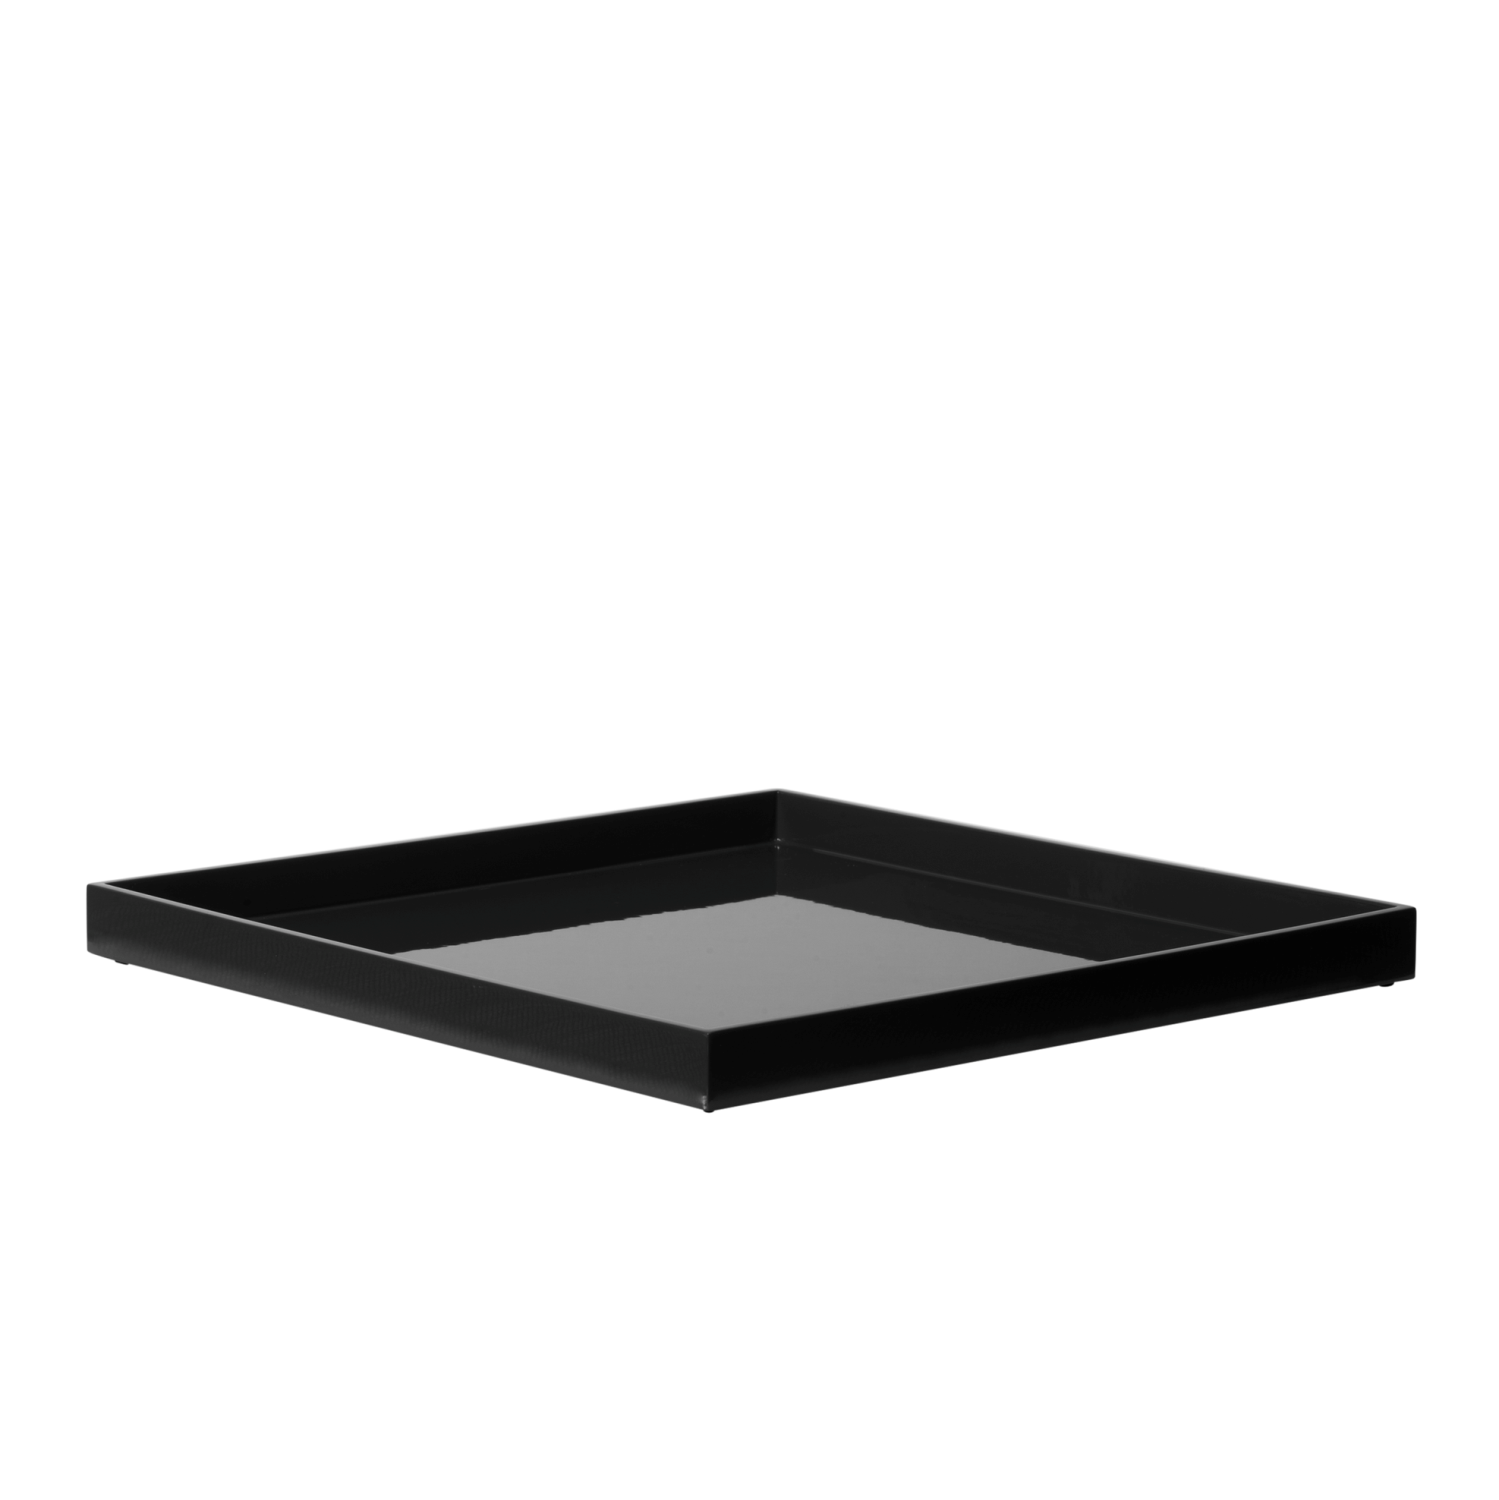 Square Tray Black 33x33cm La922